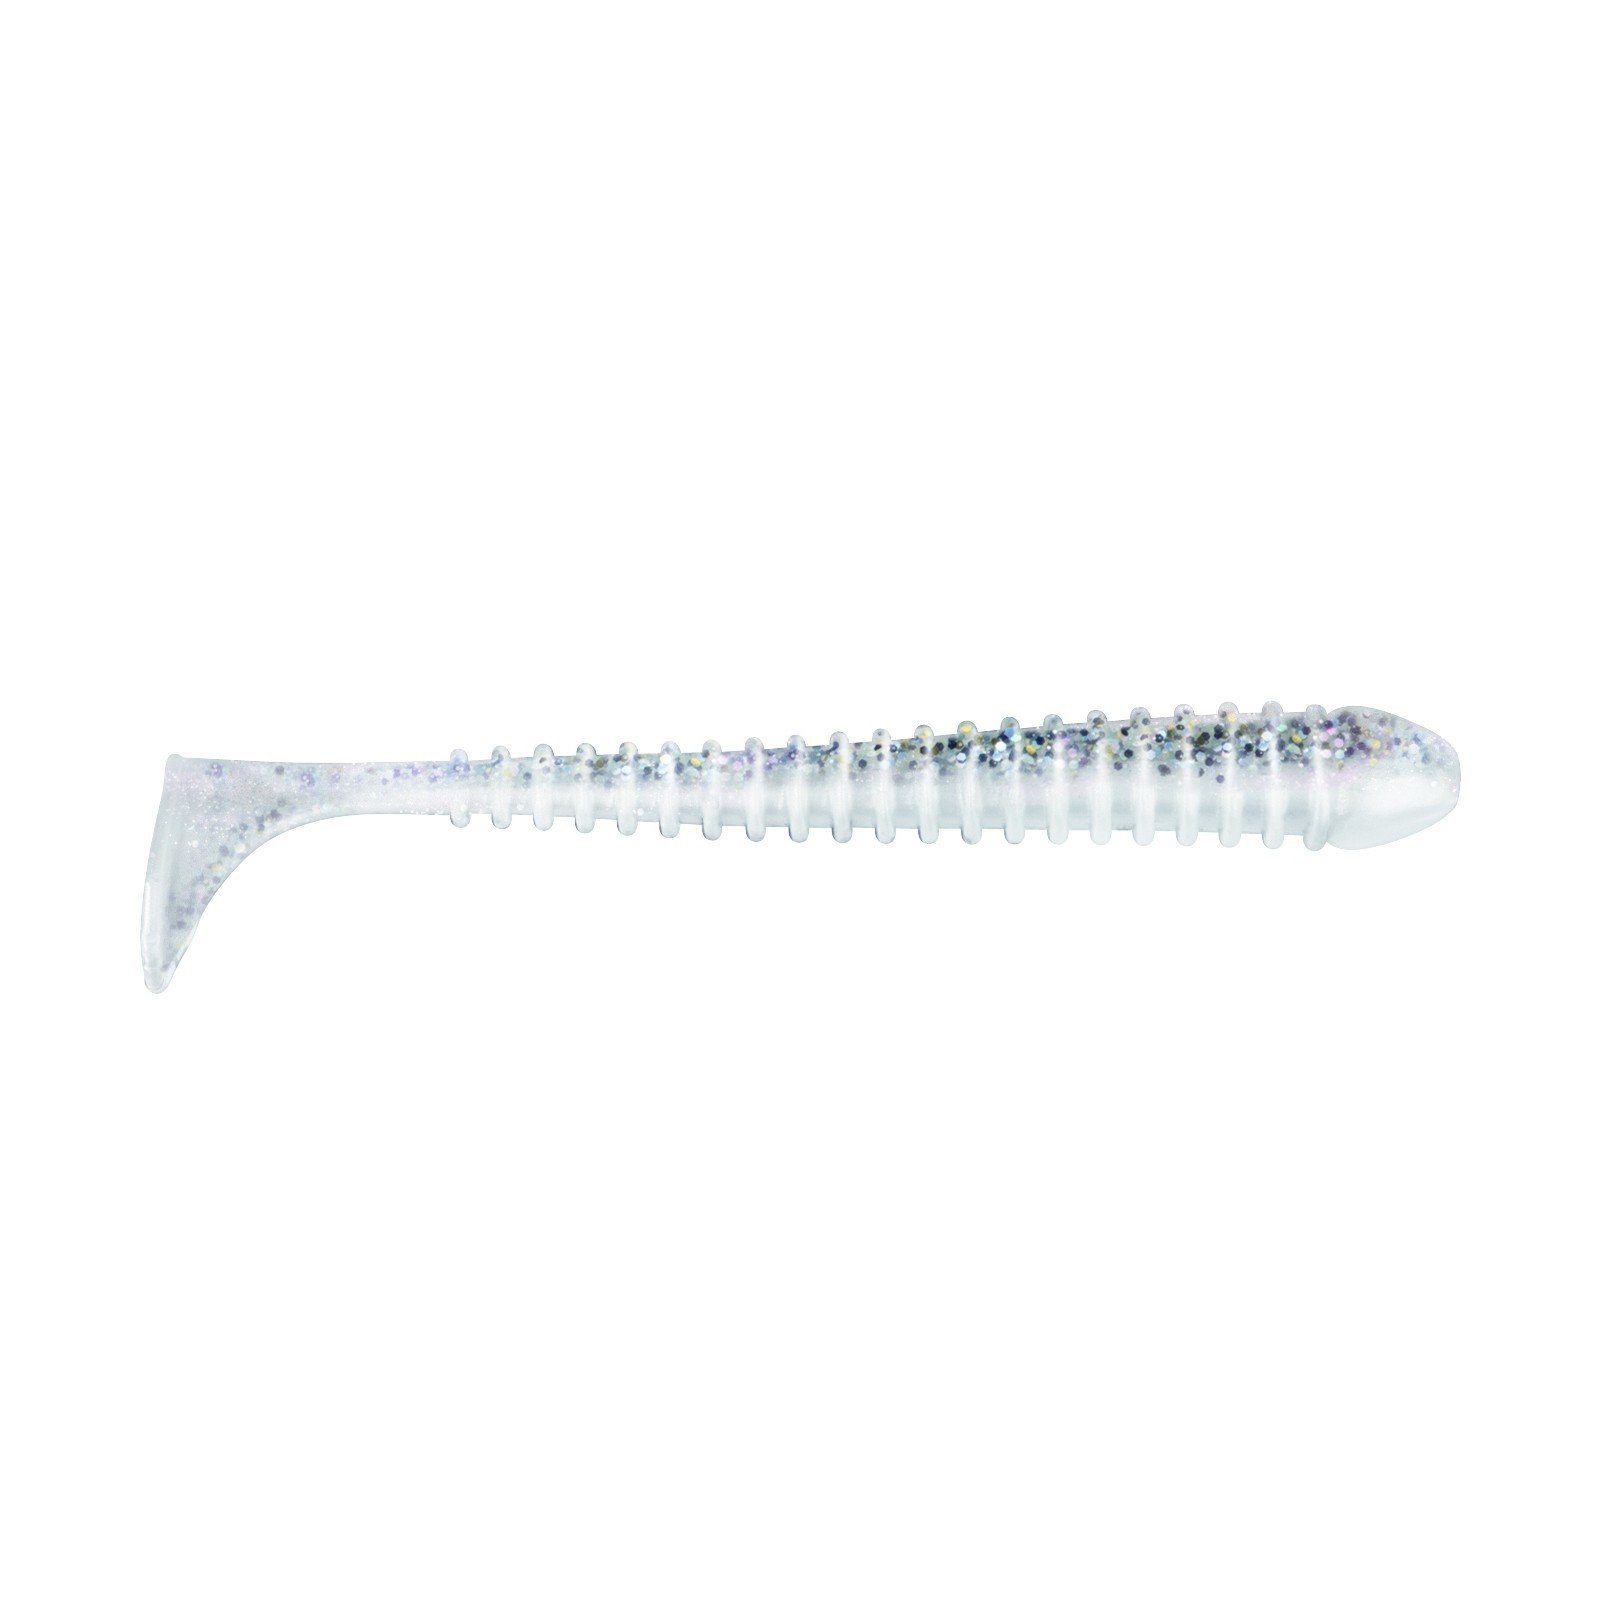 Jackson Fishing Kunstköder, Jackson The Worm 15,0cm Salt n Pepper Gummiköder | Kunstköder